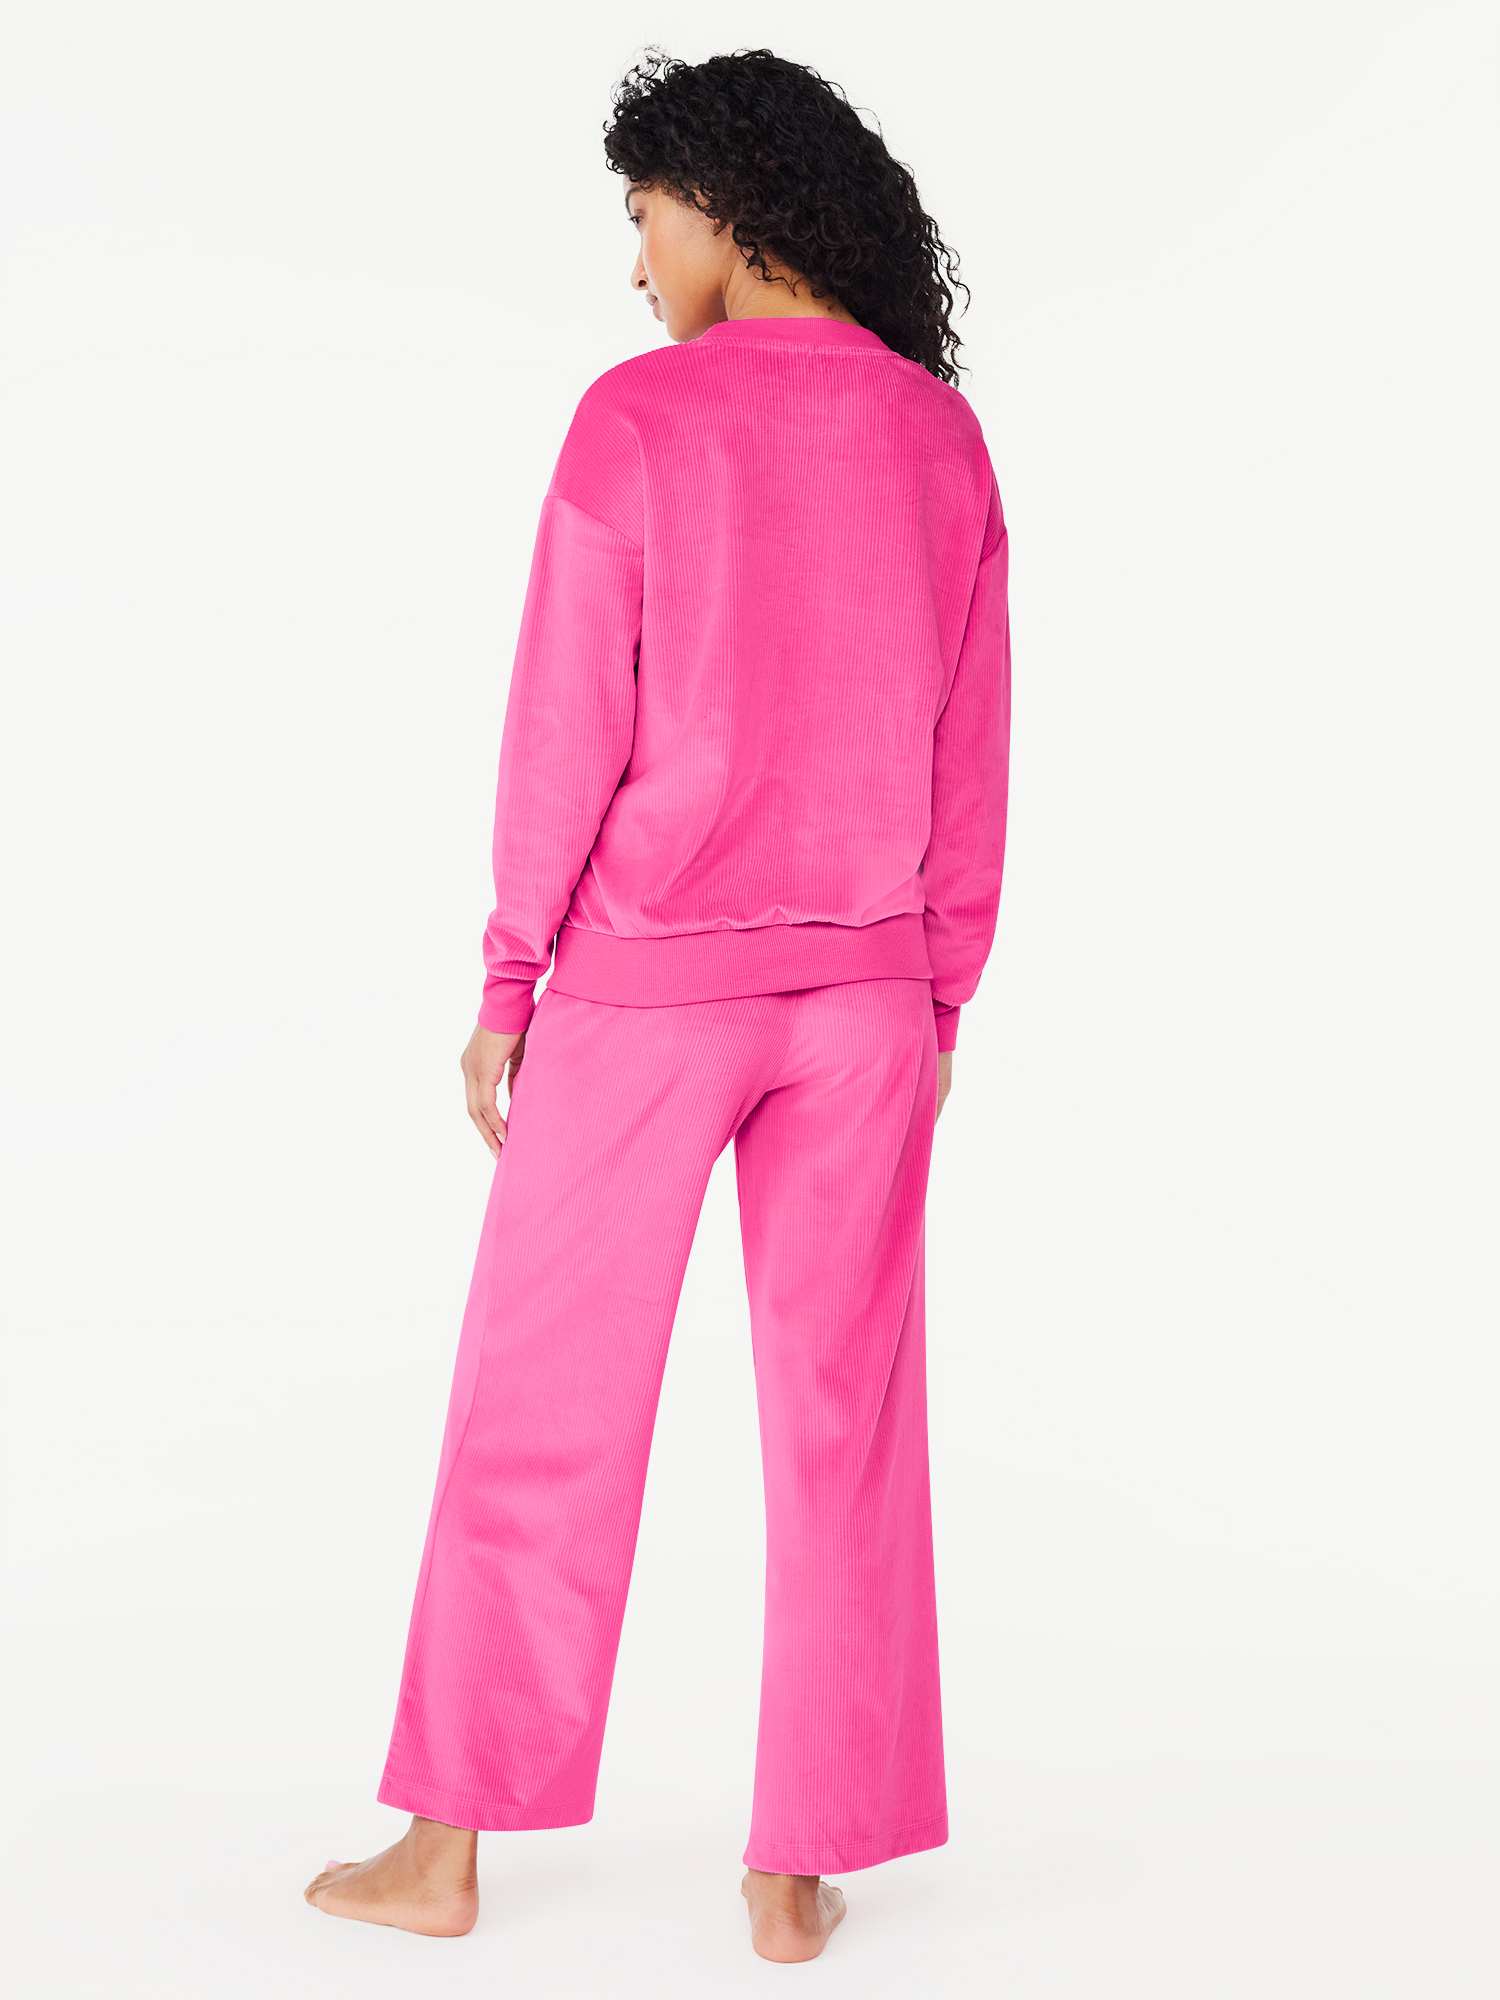 Joyspun Women's Ribbed Velour Top and Pants Pajama Set with Oversized ...